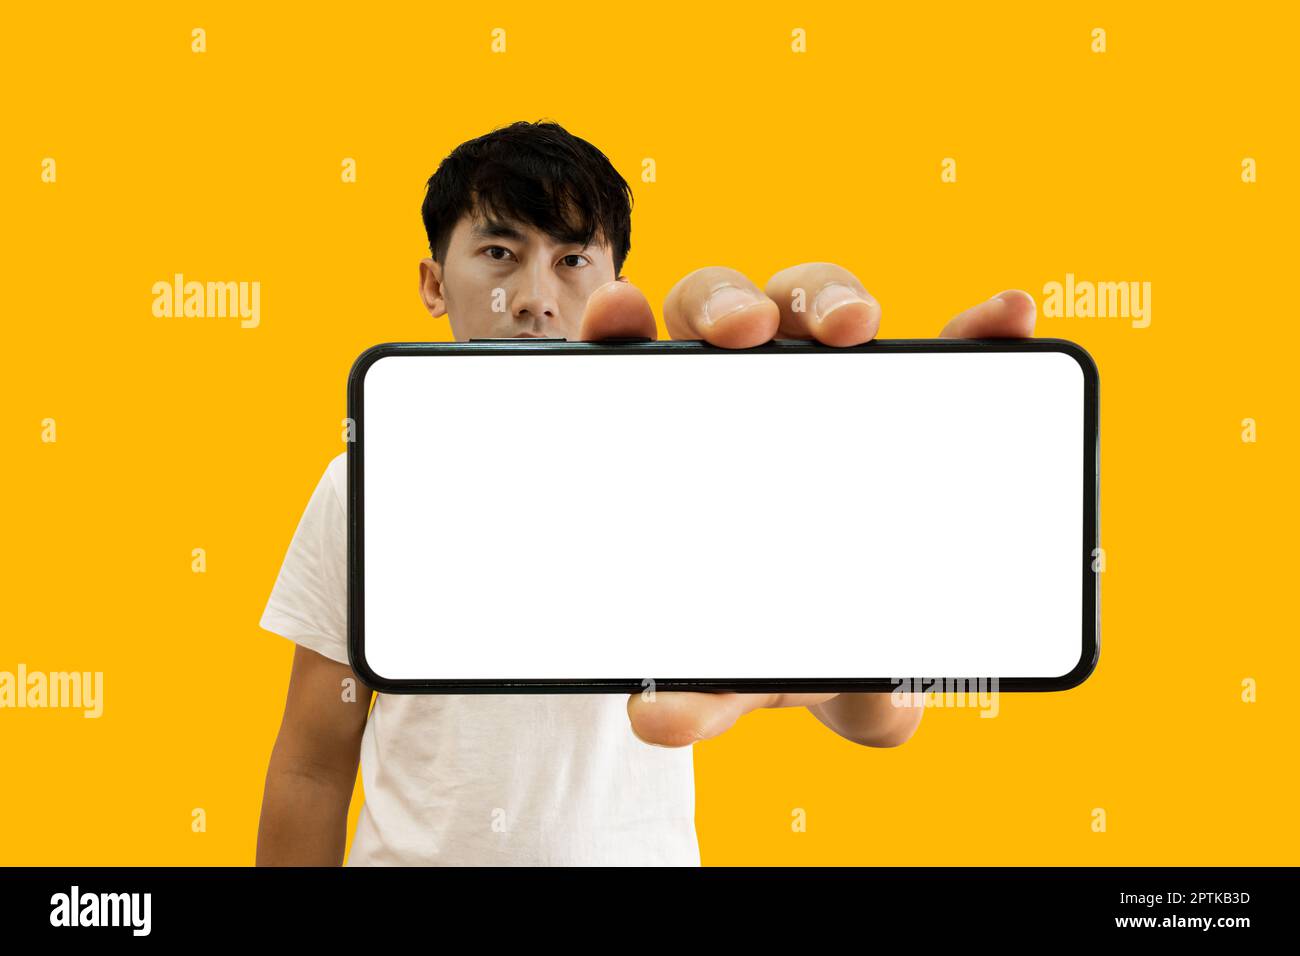 Asian Man tenant un smartphone avec écran blanc vide sur fond jaune. Maquette d'affichage de téléphone portable pour publicité d'application mobile. Banque D'Images